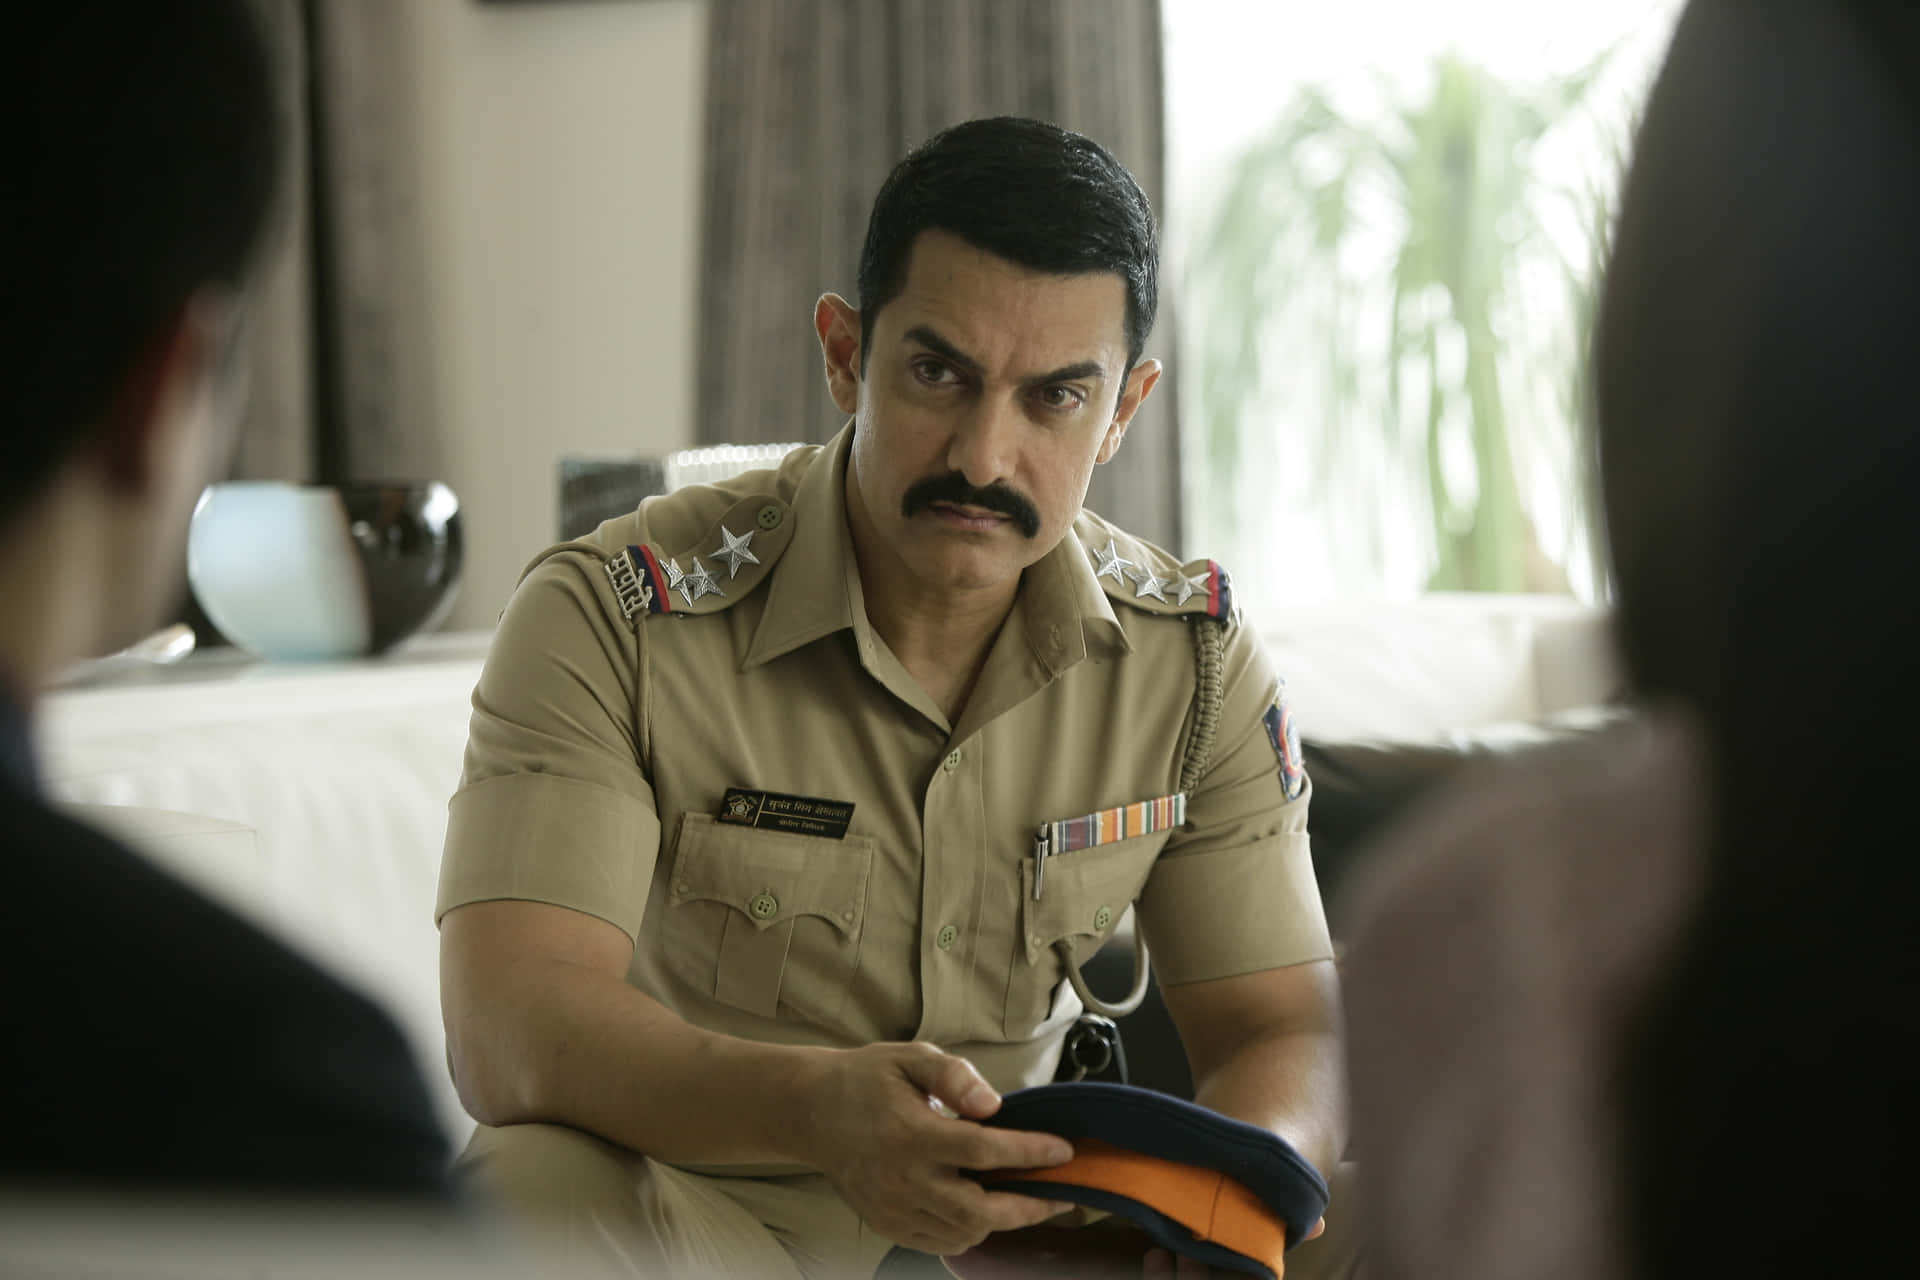 Aamirkhan, L'acclamato Attore E Produttore Cinematografico Indiano.